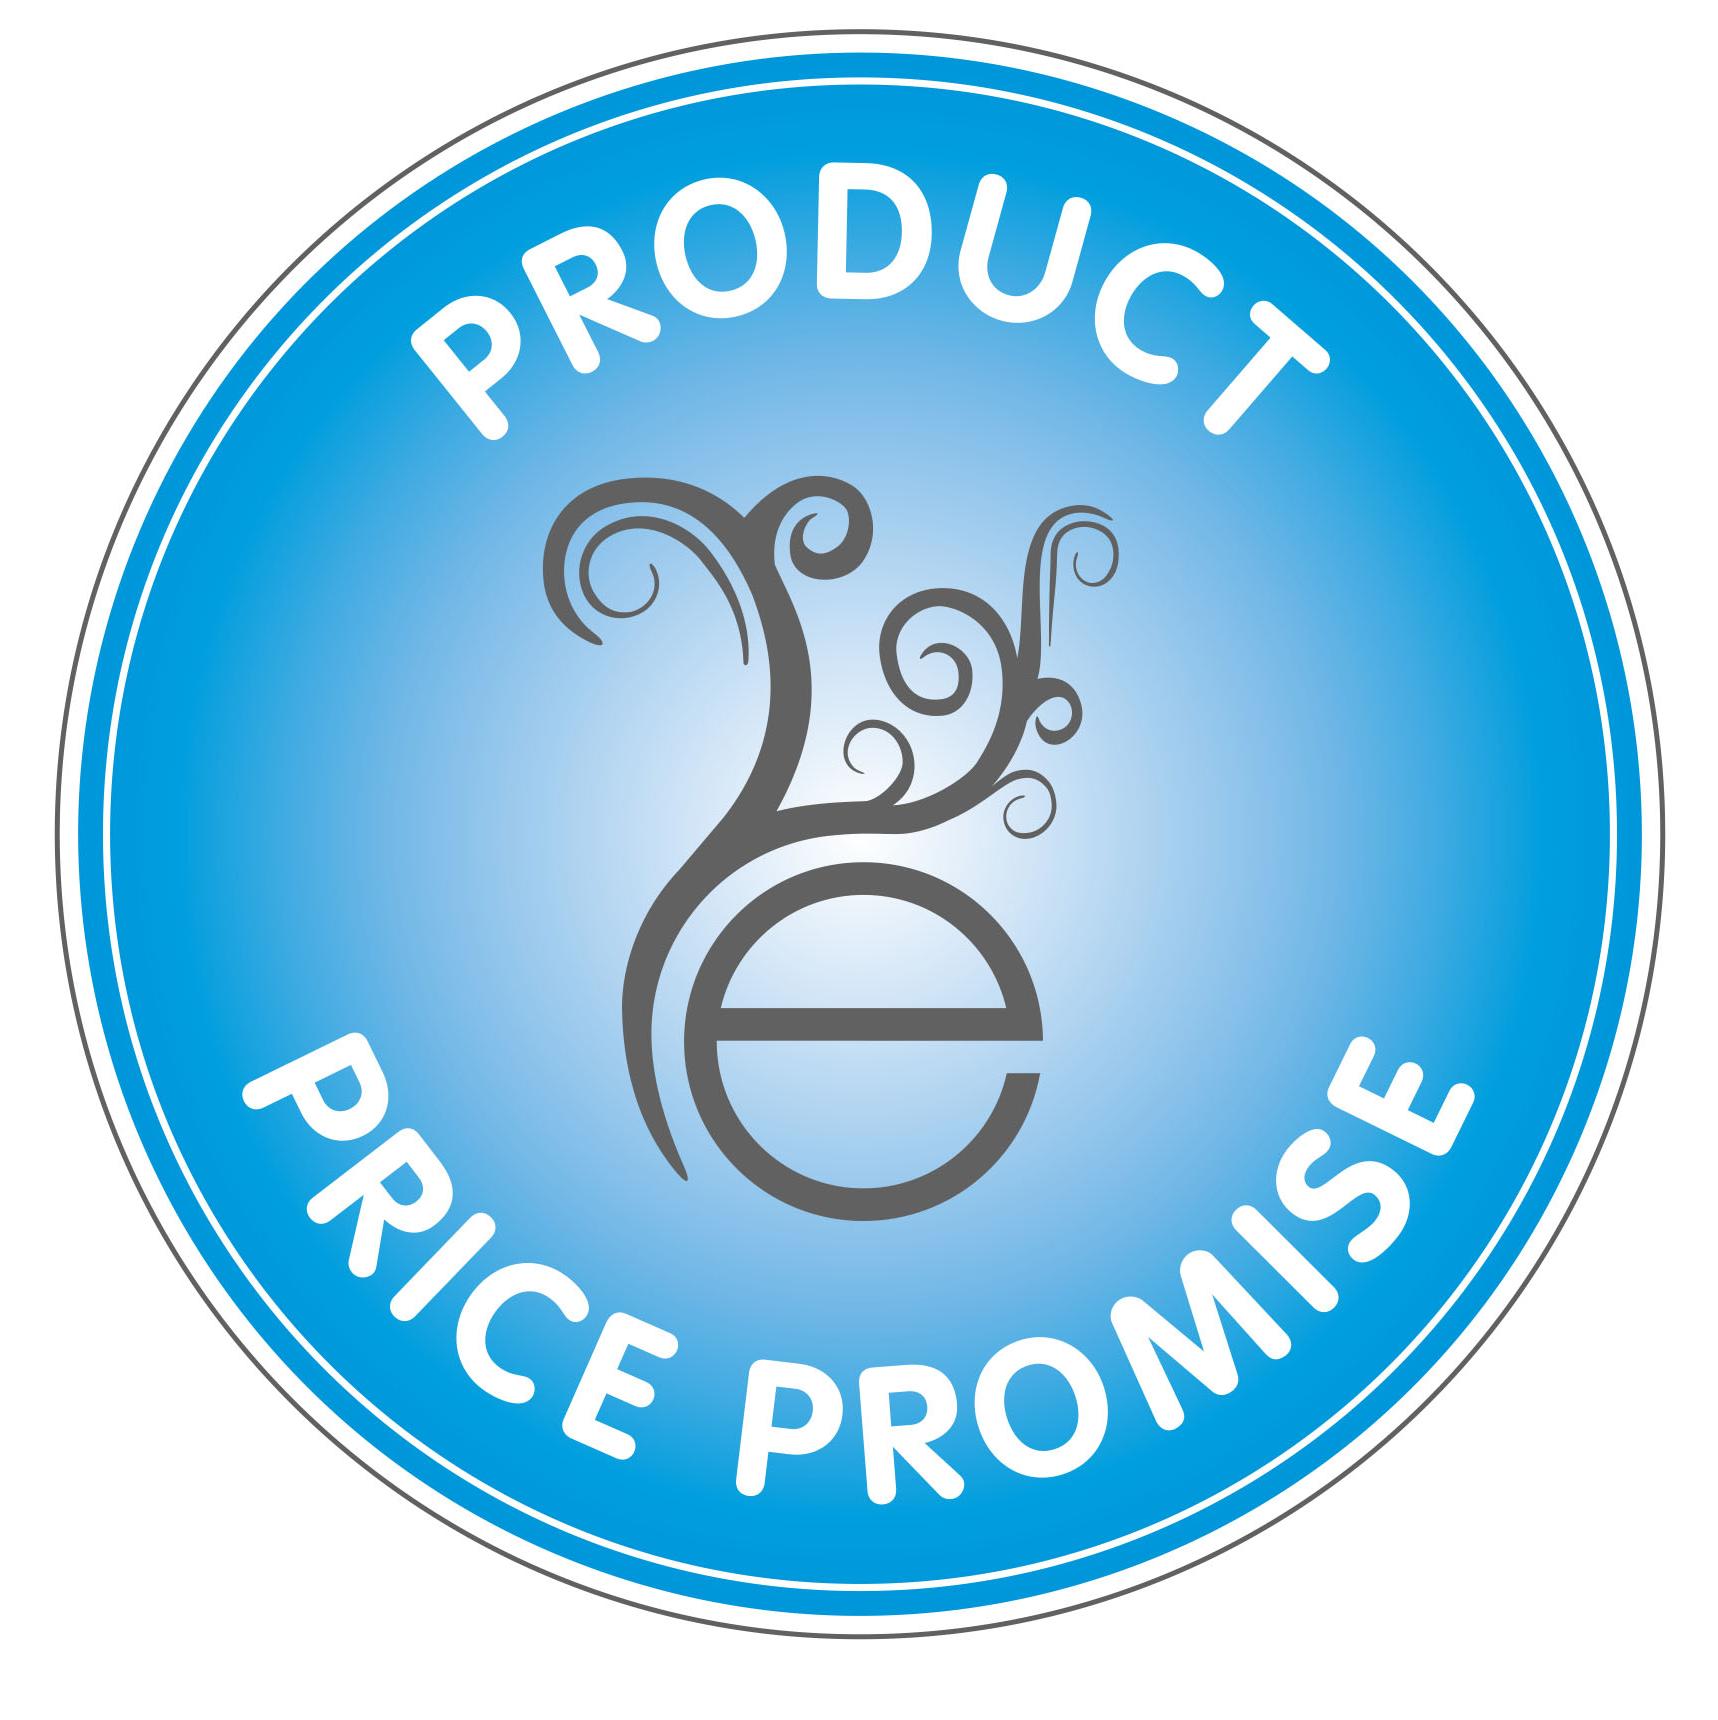 Price promise at Elysium